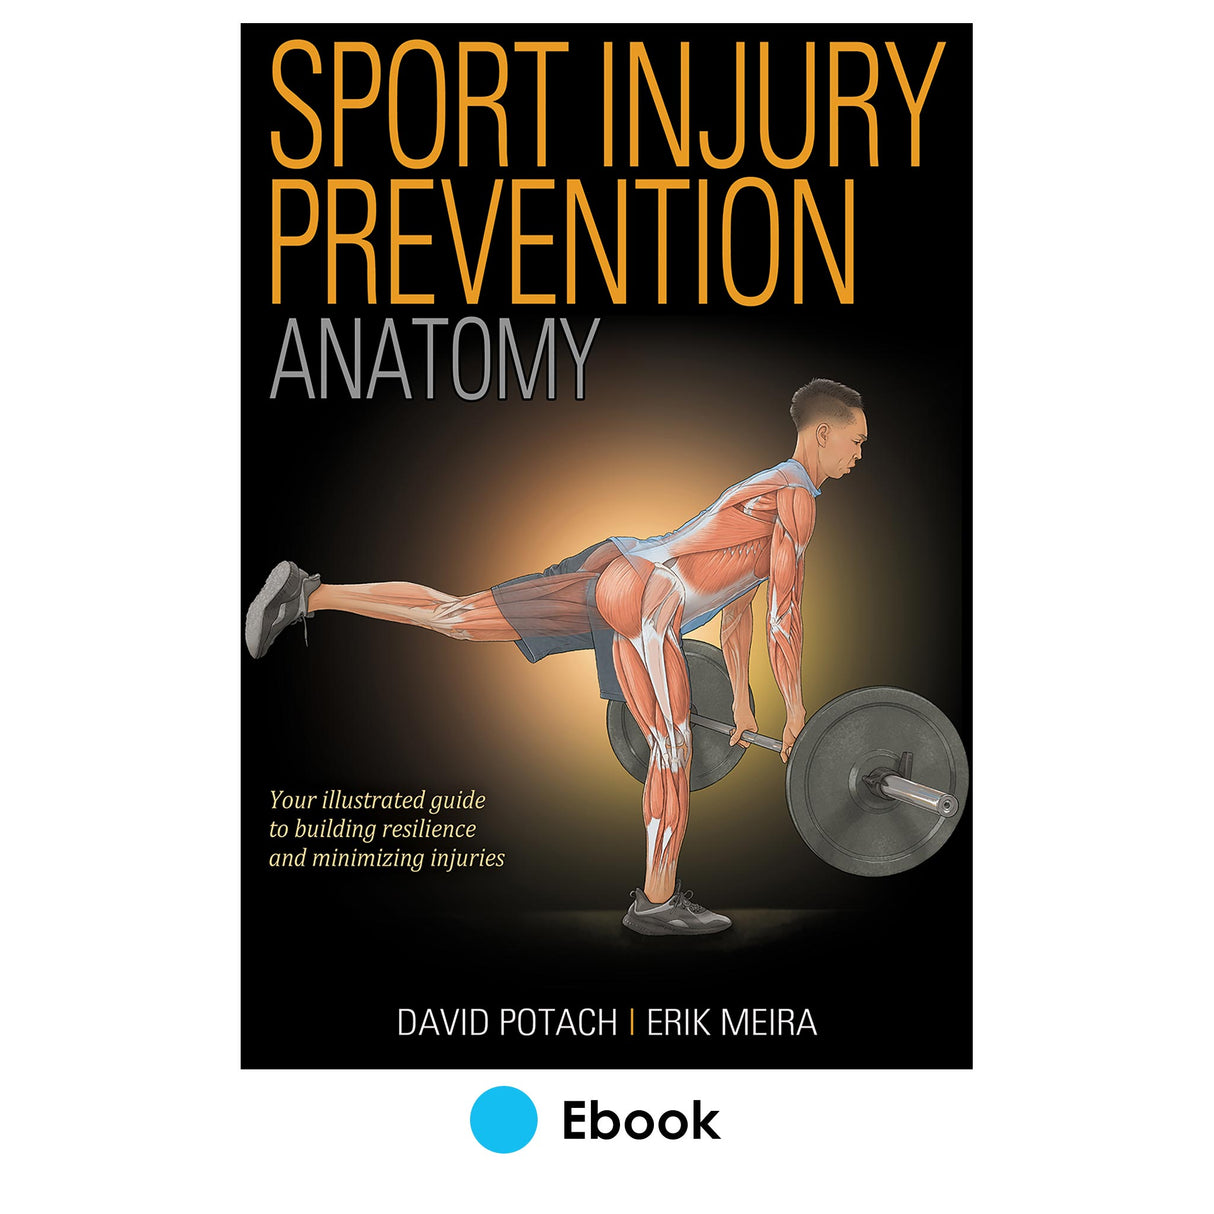 Sport Injury Prevention Anatomy epub